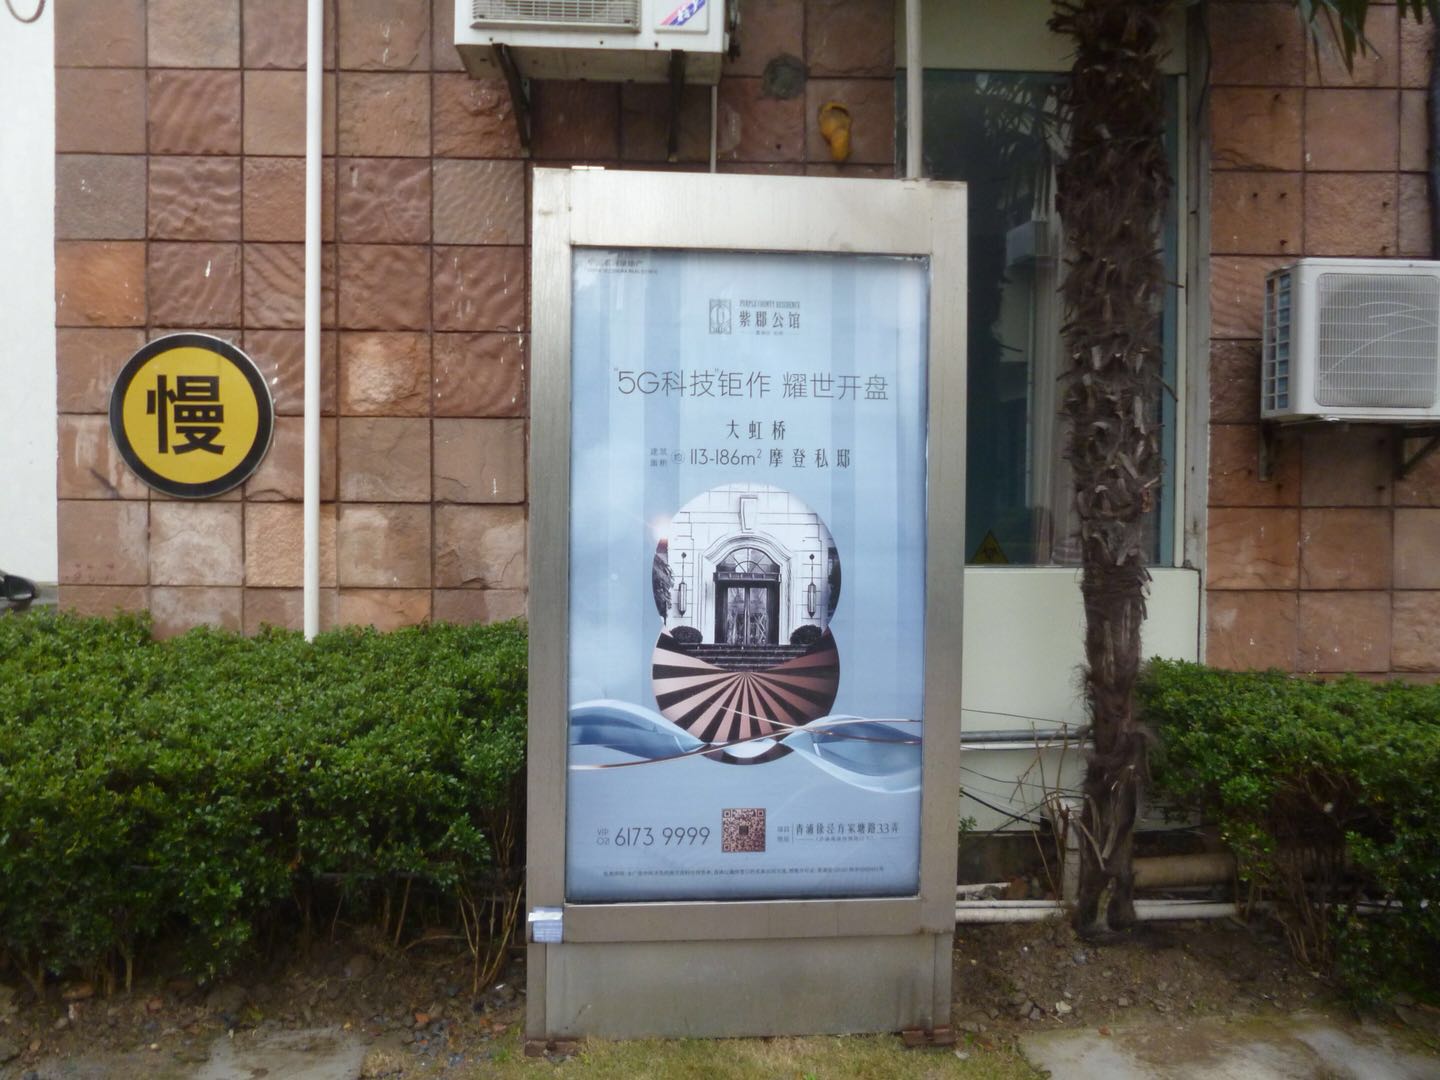 上海社区广告 上海小区广告投放 社区广告